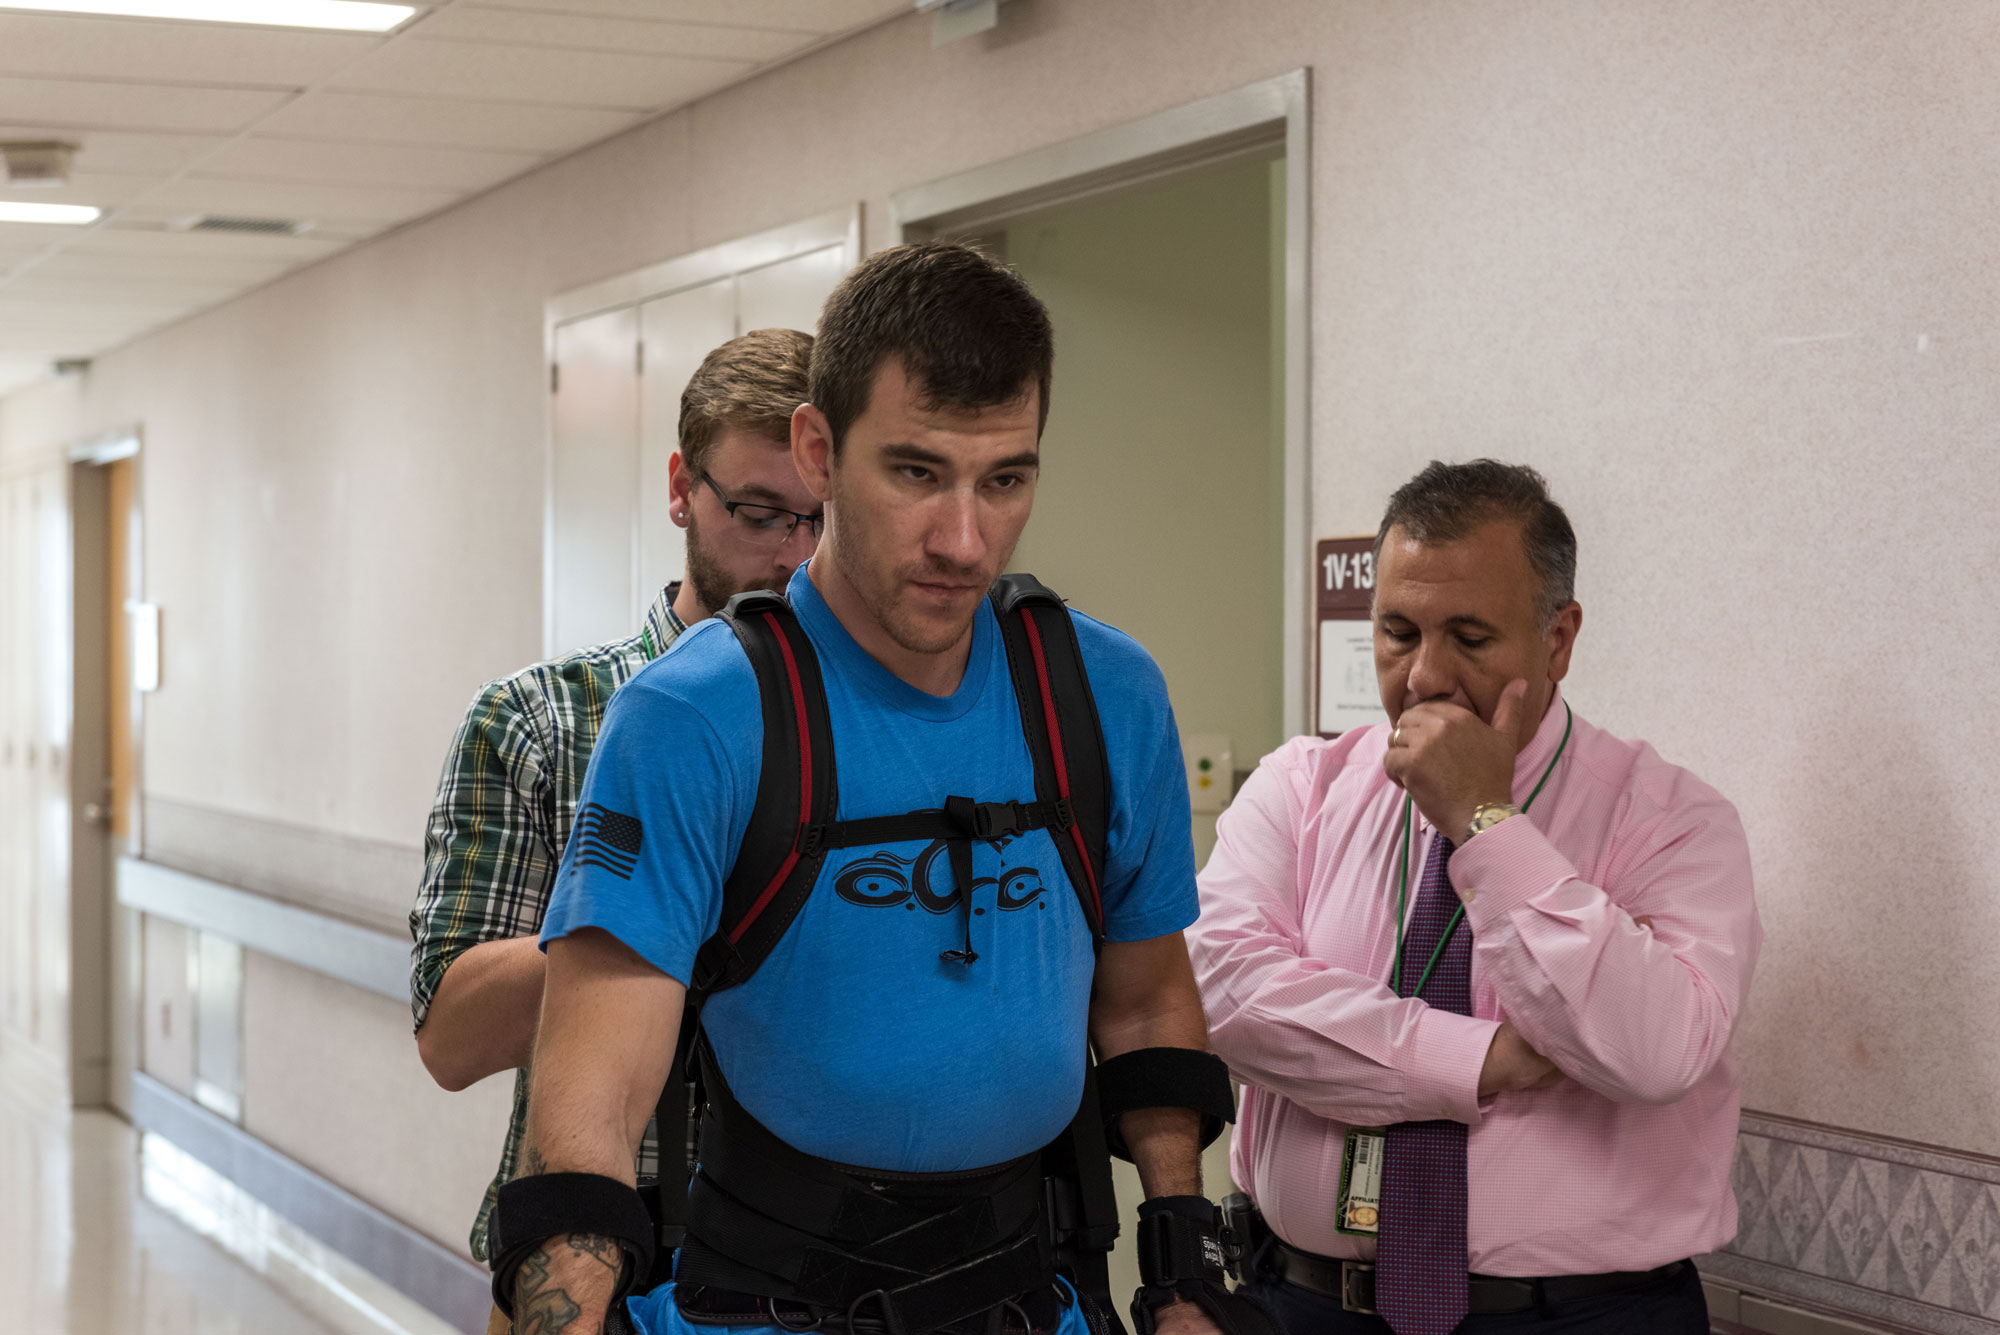 Gorgey awarded $3.7 million to study robotic exoskeletons, spinal epidural stimulation .